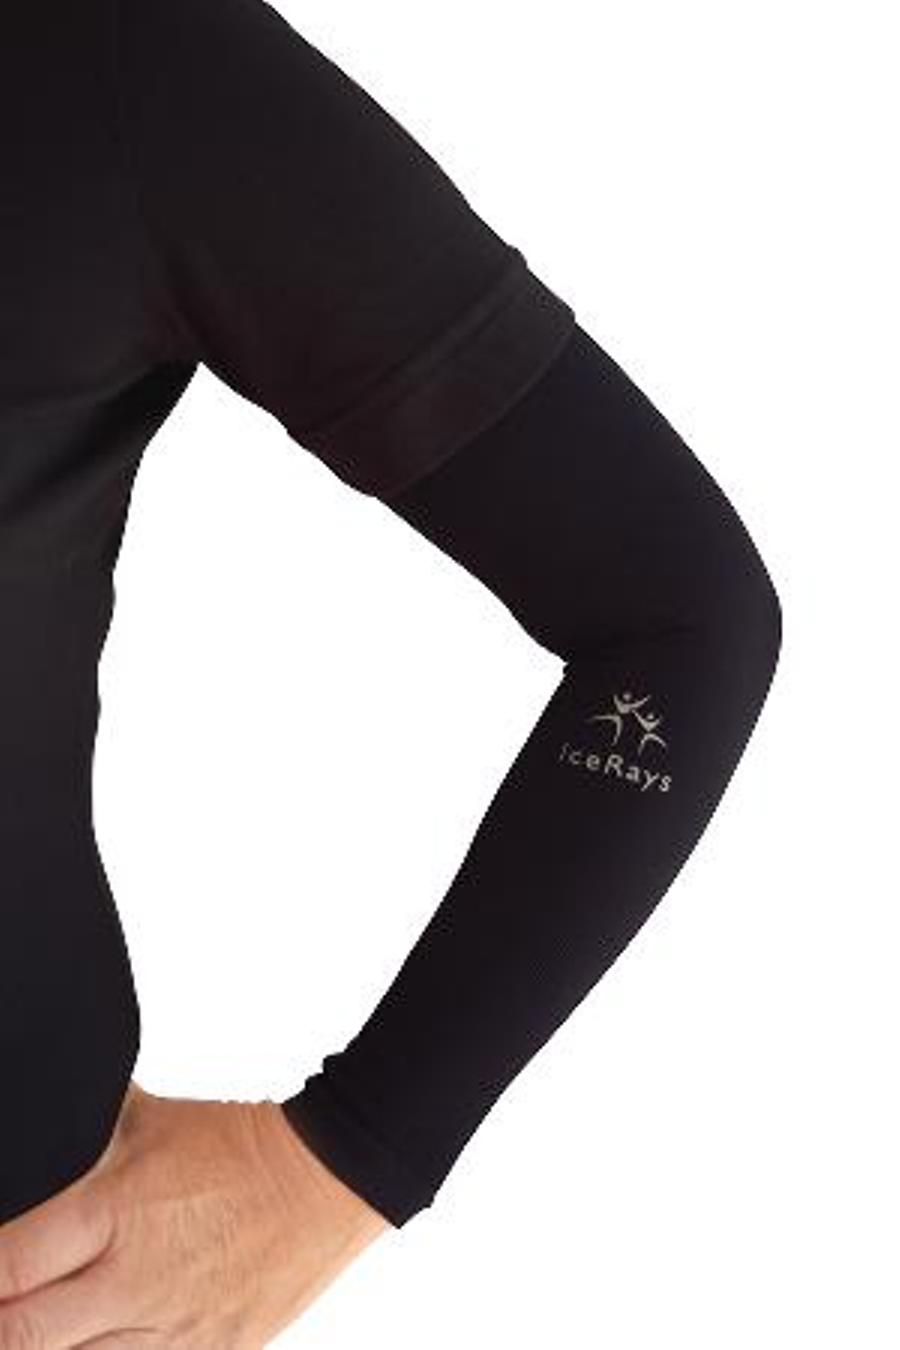 IceRays Cooling UV Arm Sleeves Black